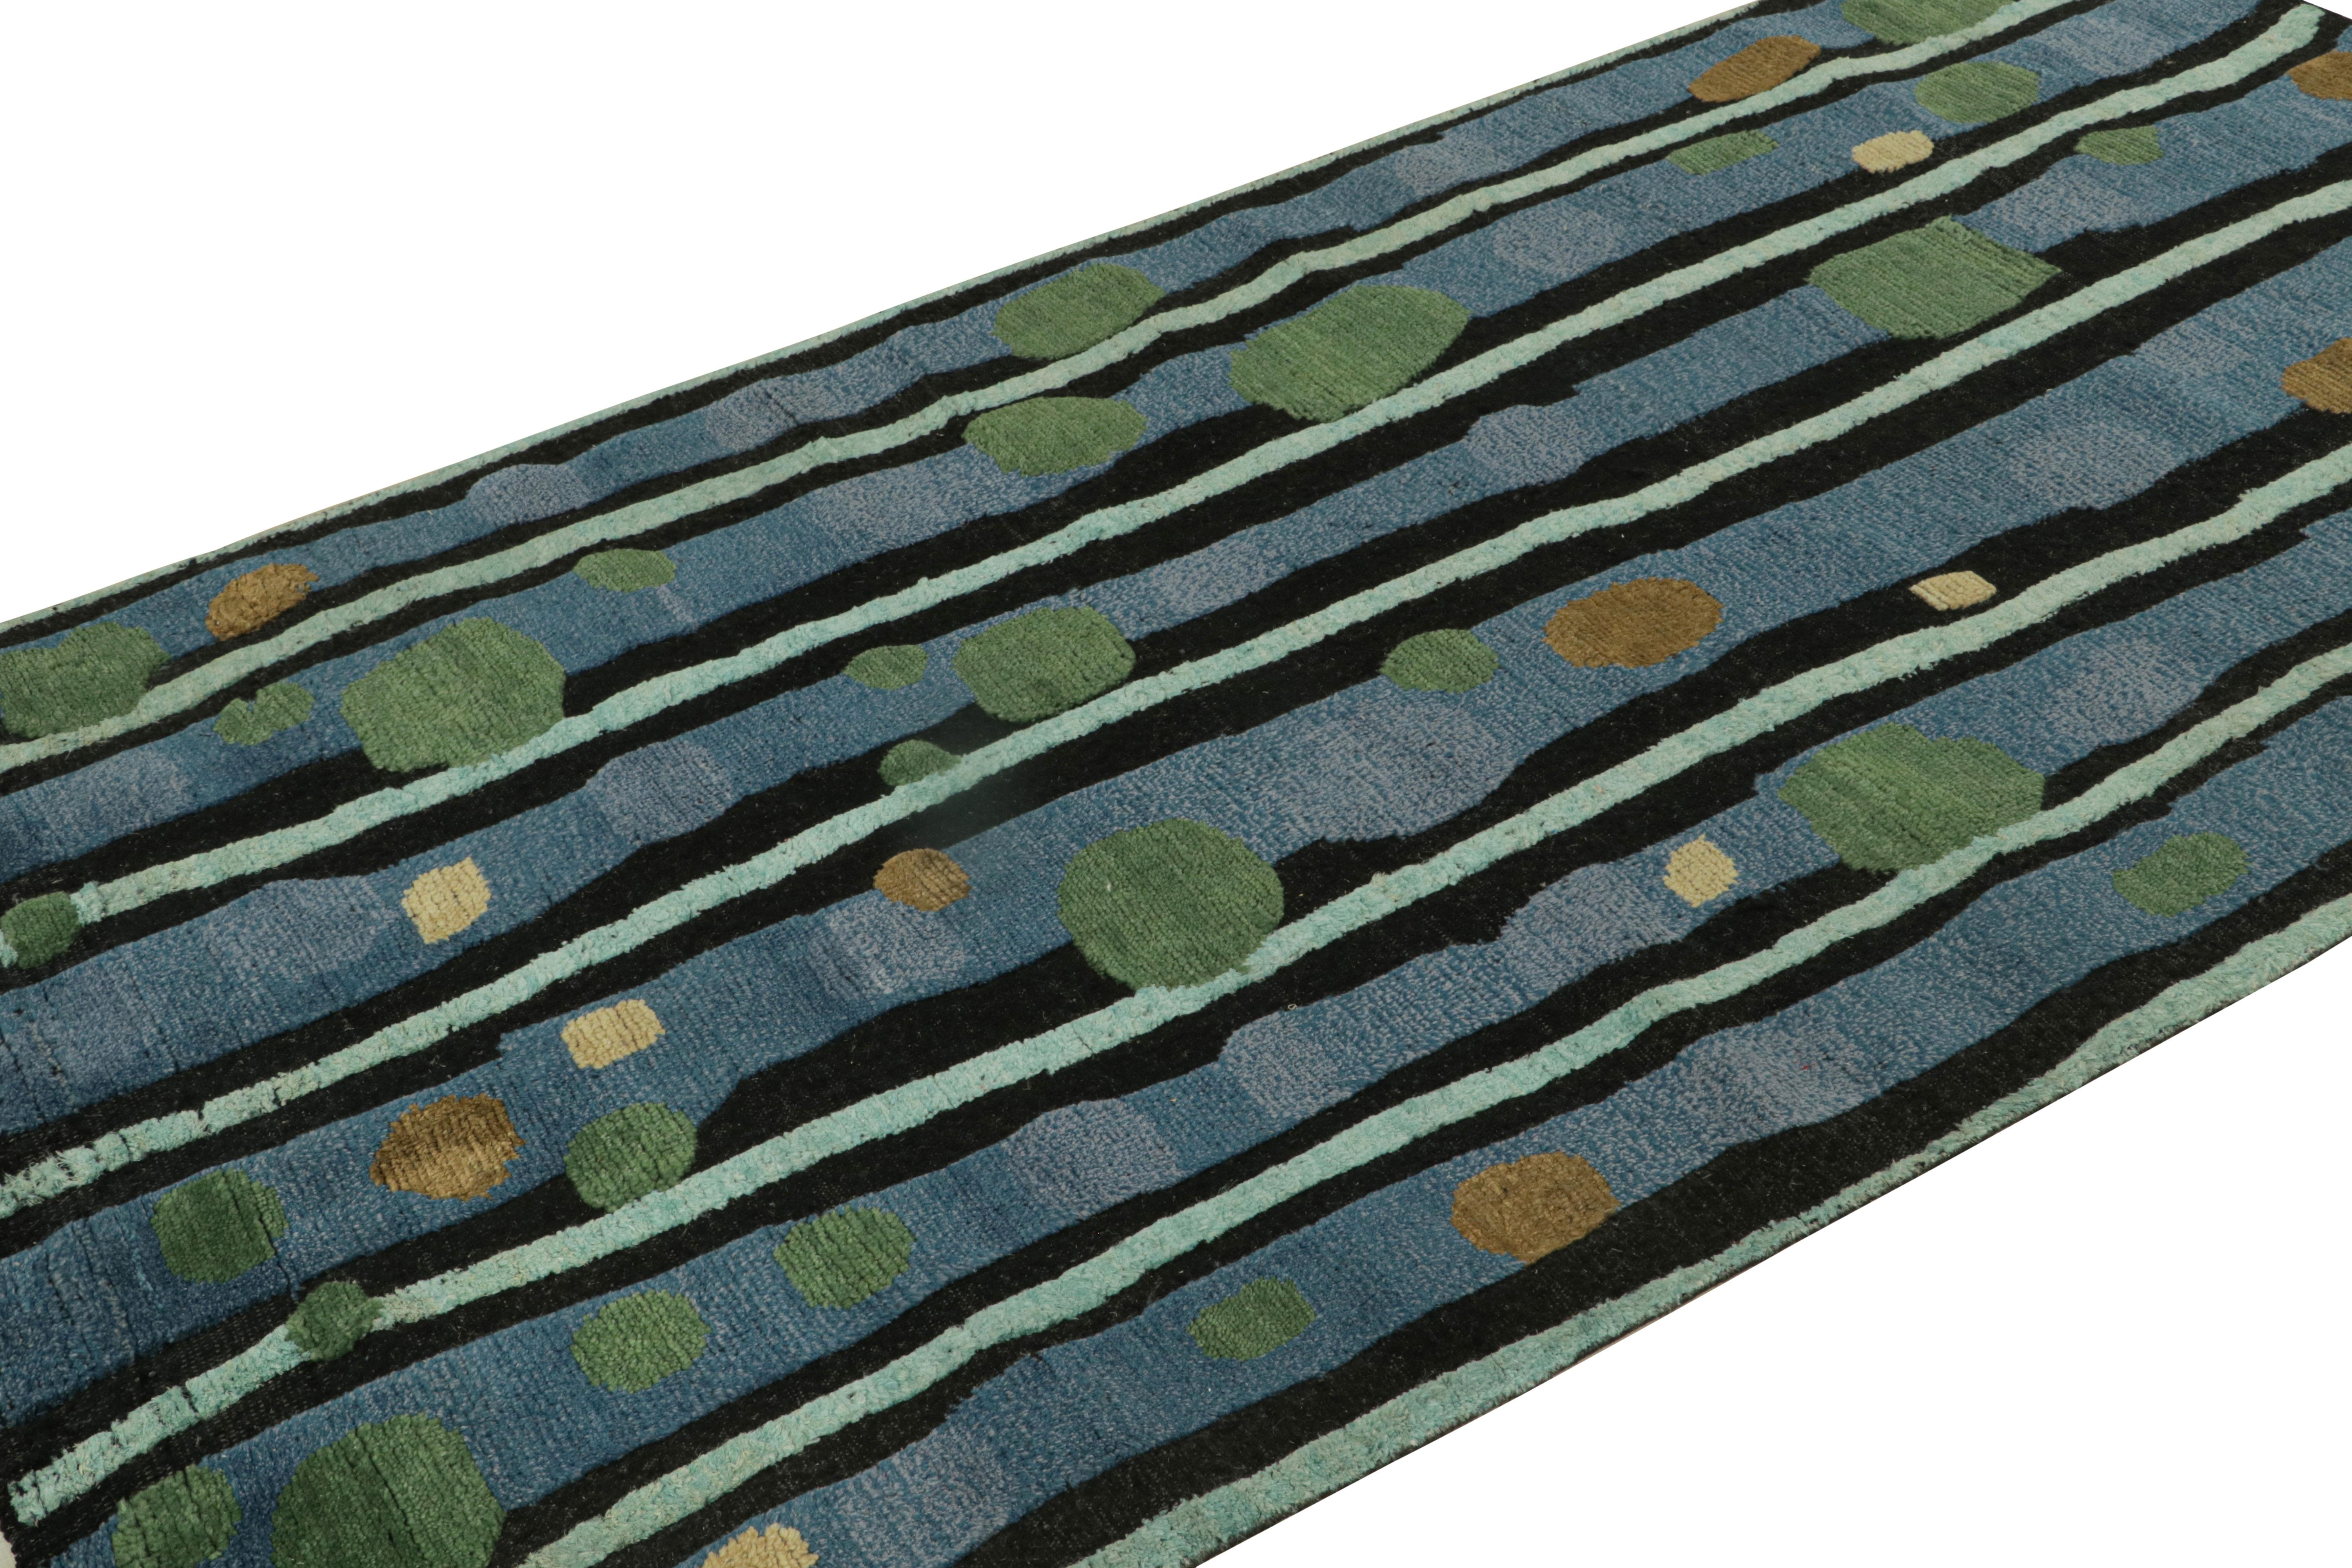 Handgeknüpft aus Wolle und Sari-Seide ist dieser skandinavische Teppich 5x8 vom verspielten Retro-Look inspiriert - er erinnert eher an den skandinavischen Rya-Look der späten 70er Jahre. 

Über das Design: 

Bewunderer des Handwerks mögen die